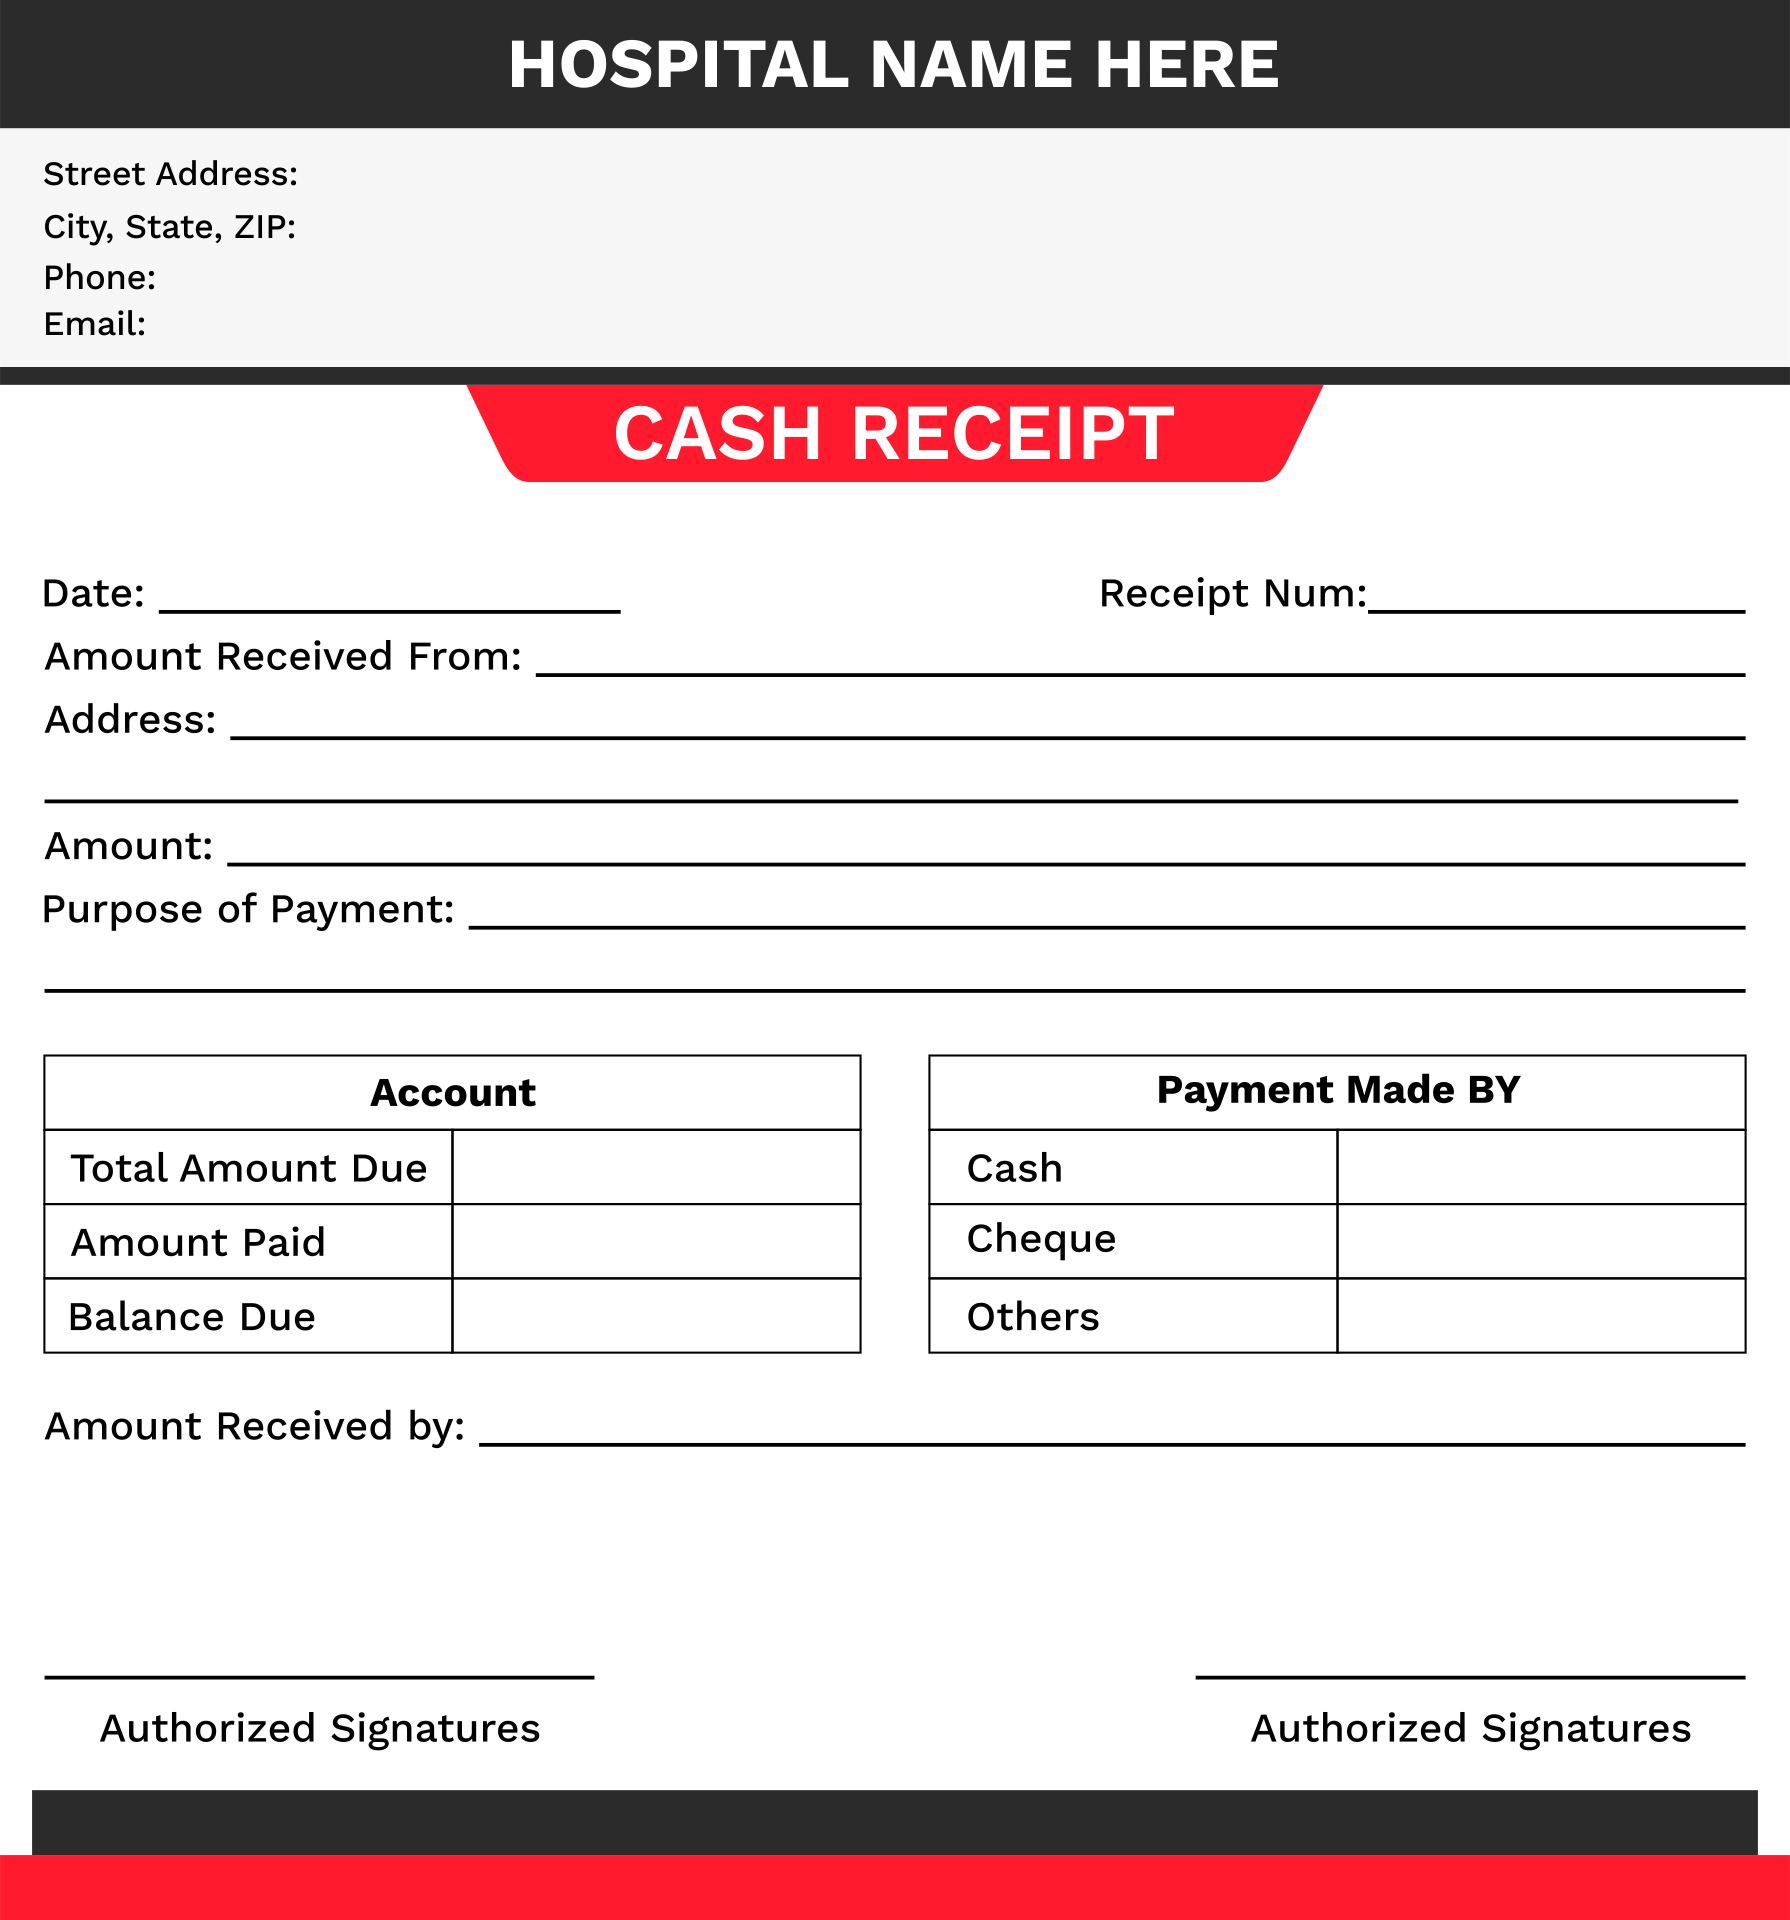 cash-receipt-template-5-printable-cash-receipt-formats-50-free